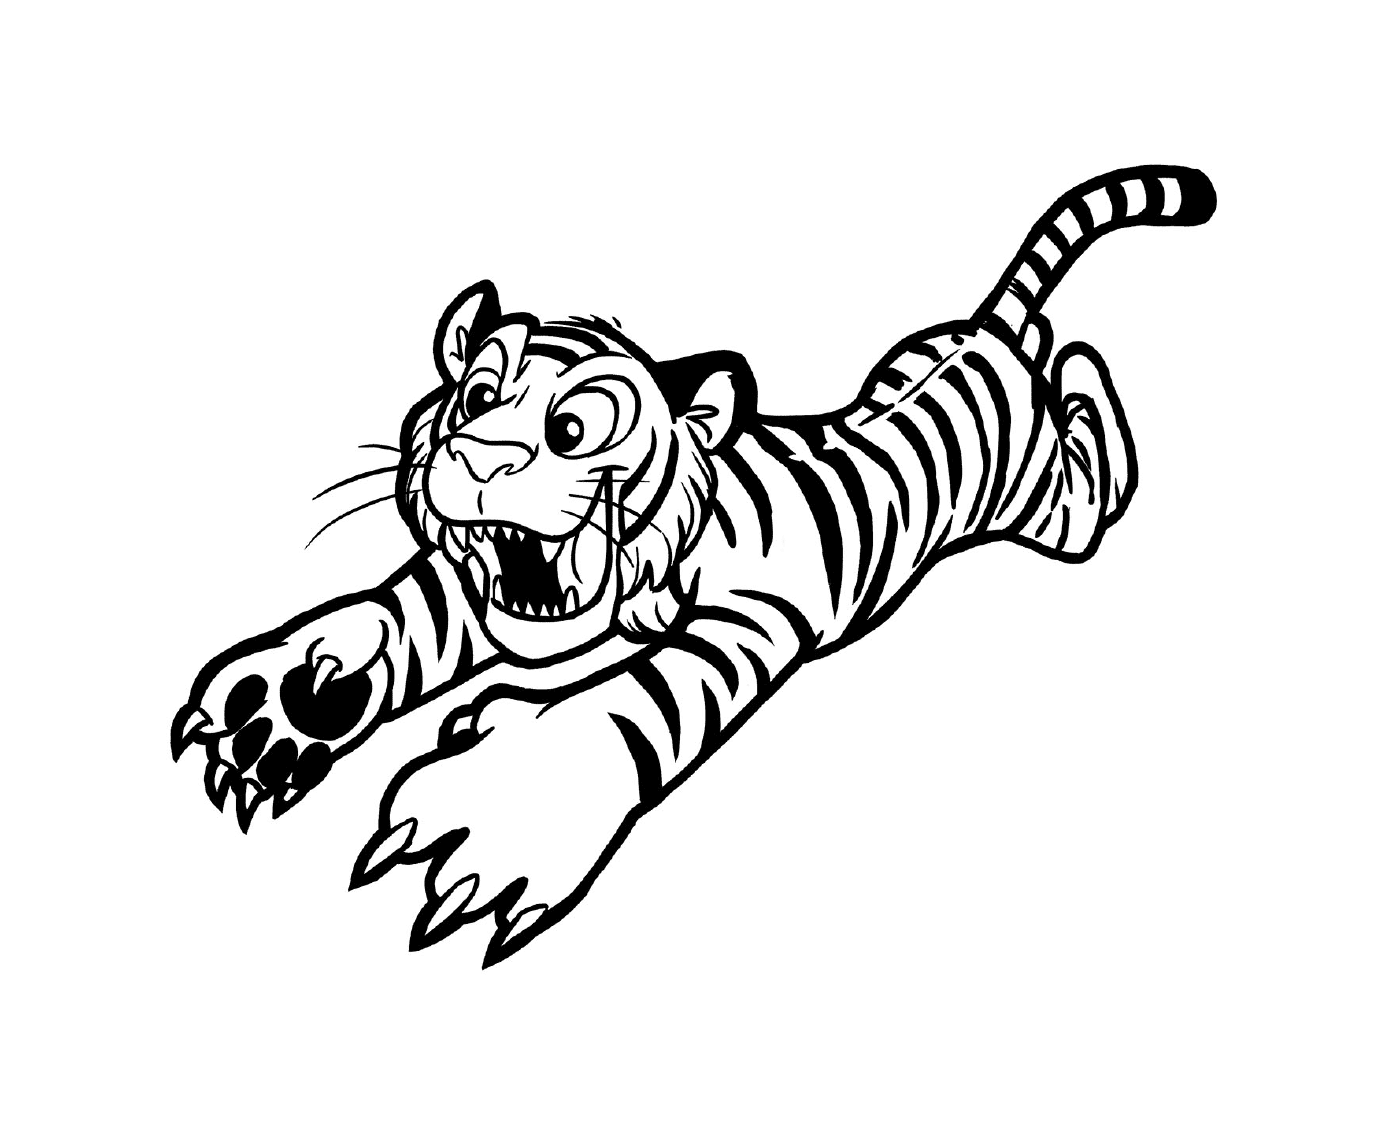  Un tigre en acción 